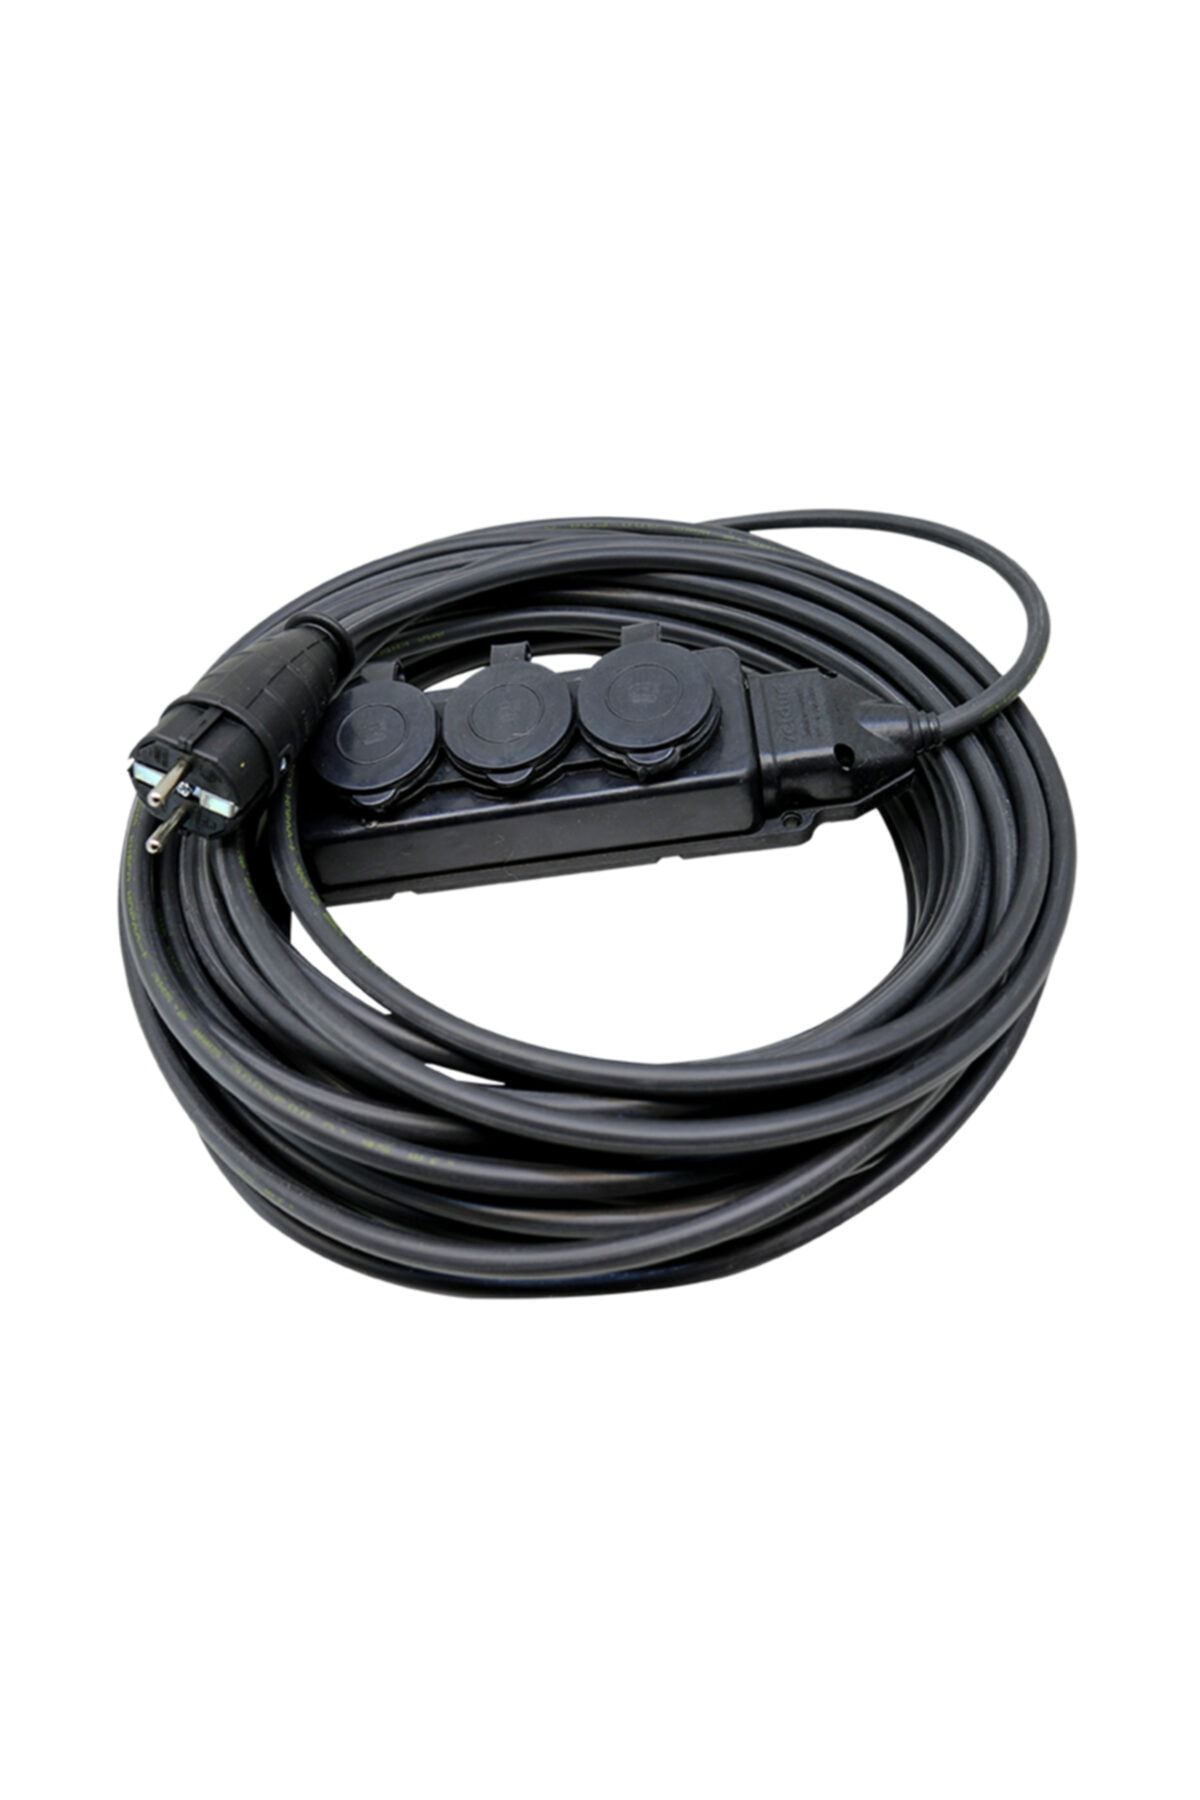 sas kablo Kauçuk Başlıklı 10 Metre Siyah Uzatma Kablosu 3x2,5 mm